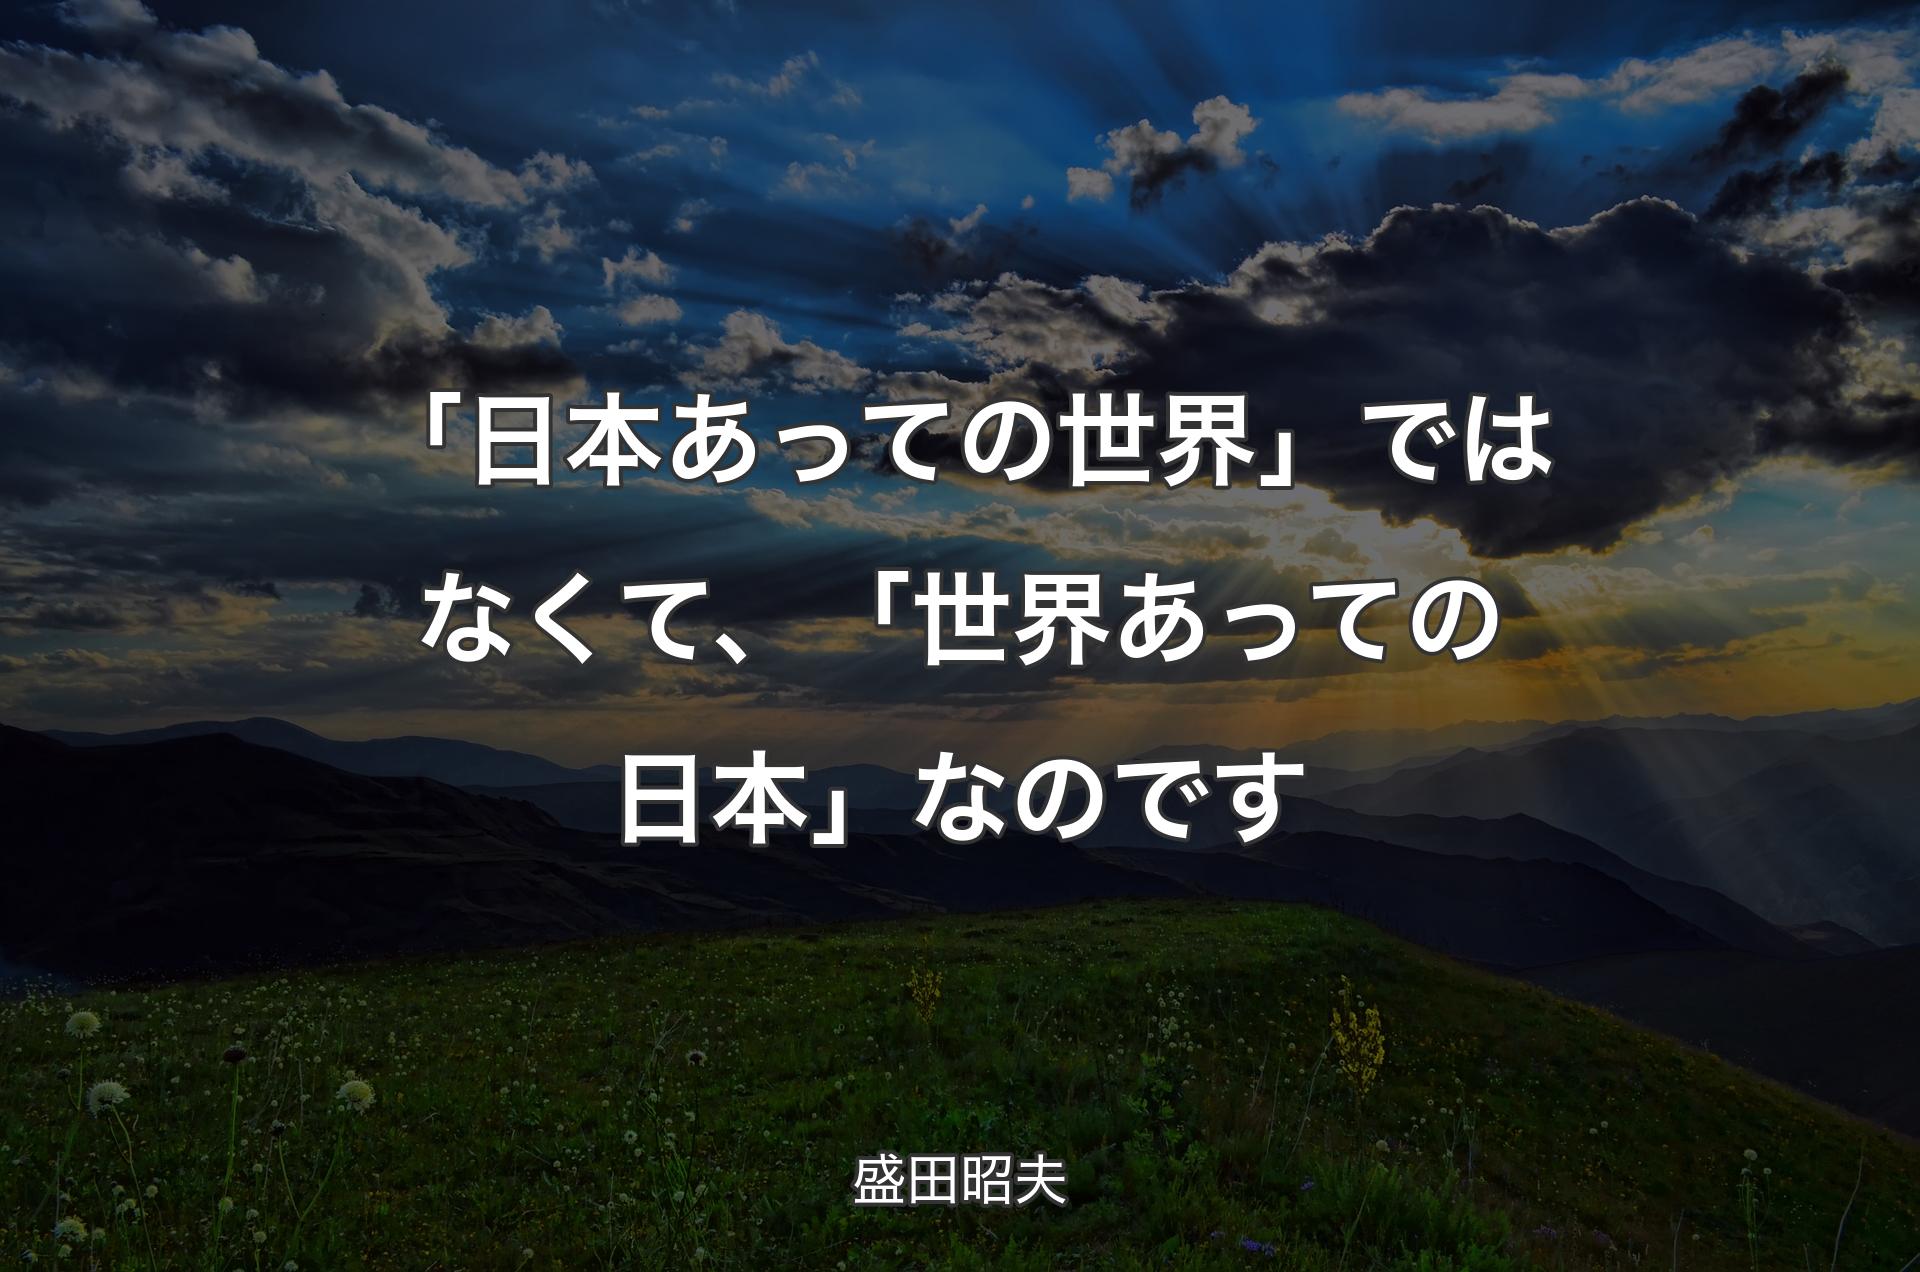 「日本あっての世界」ではなくて、「世界あっての日本」なのです - 盛田昭夫